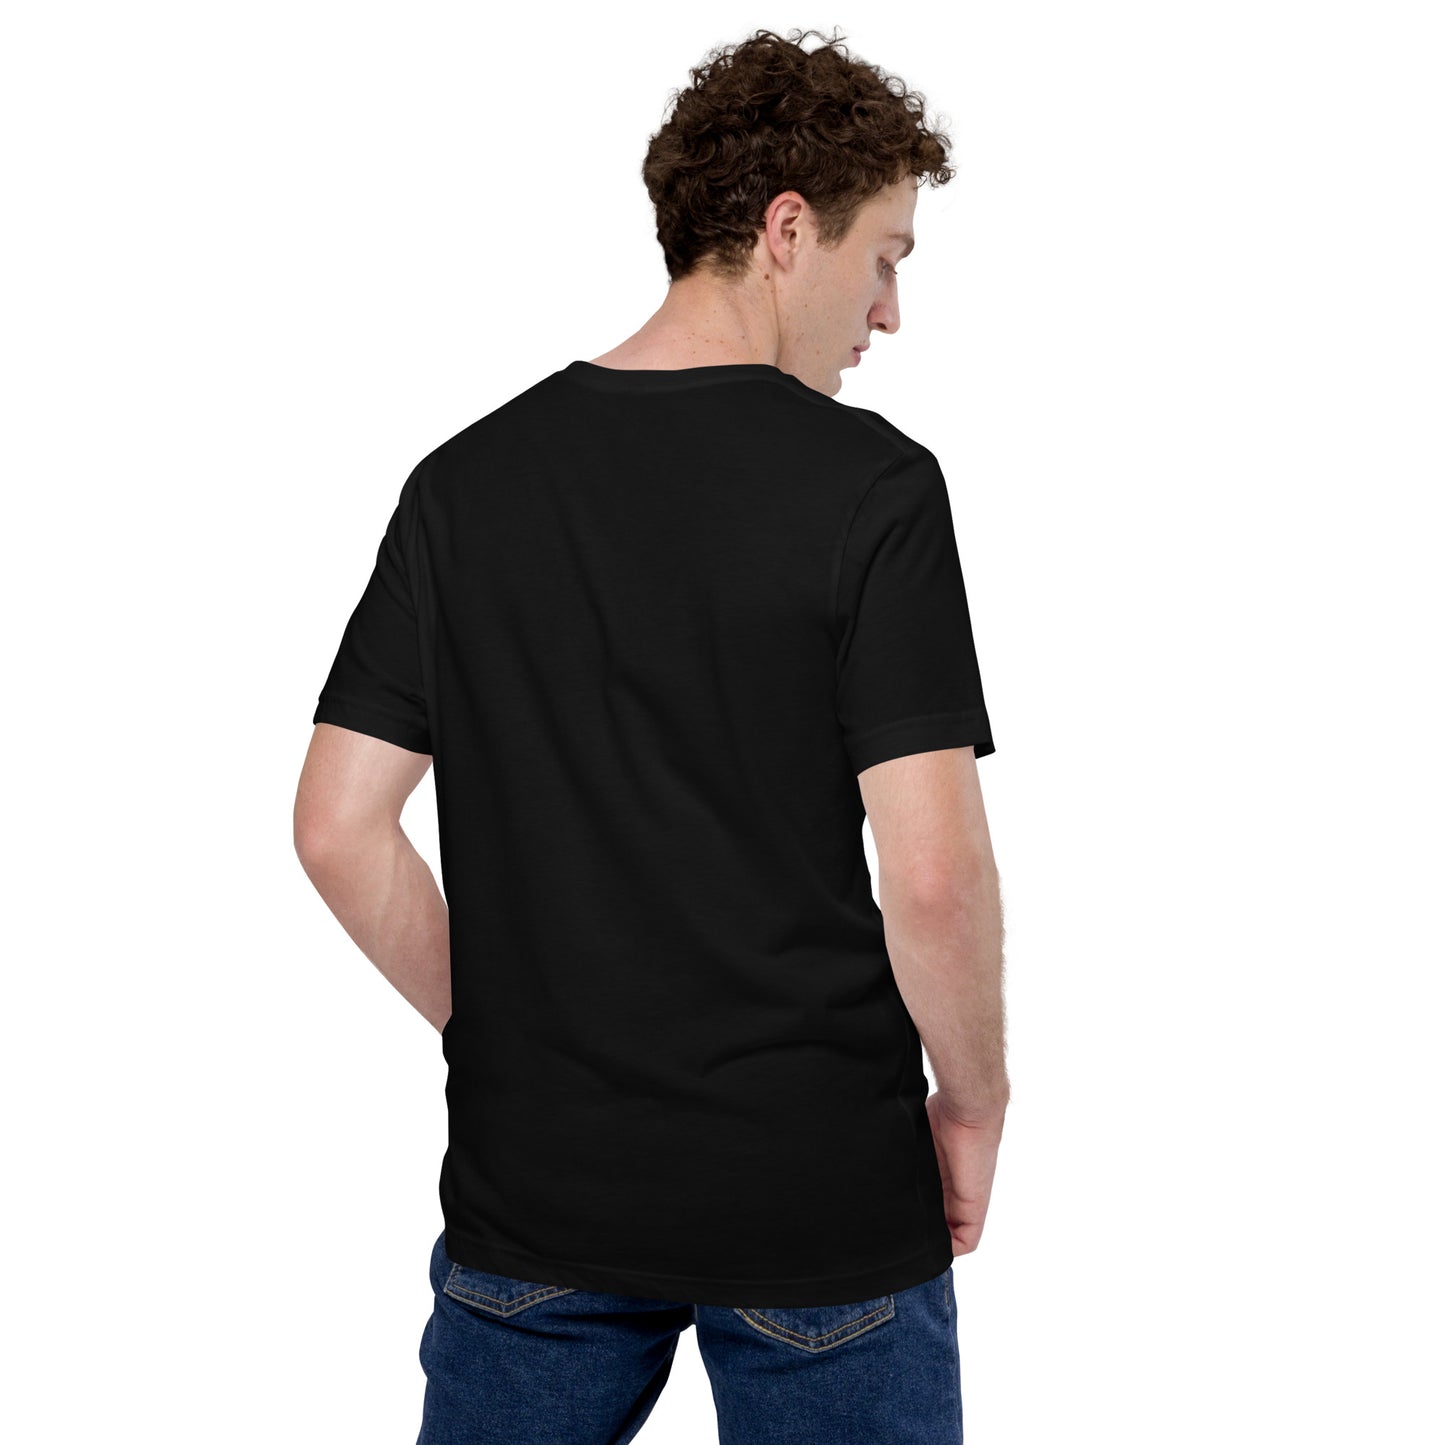 Saint Rock Tour - Unisex t-shirt